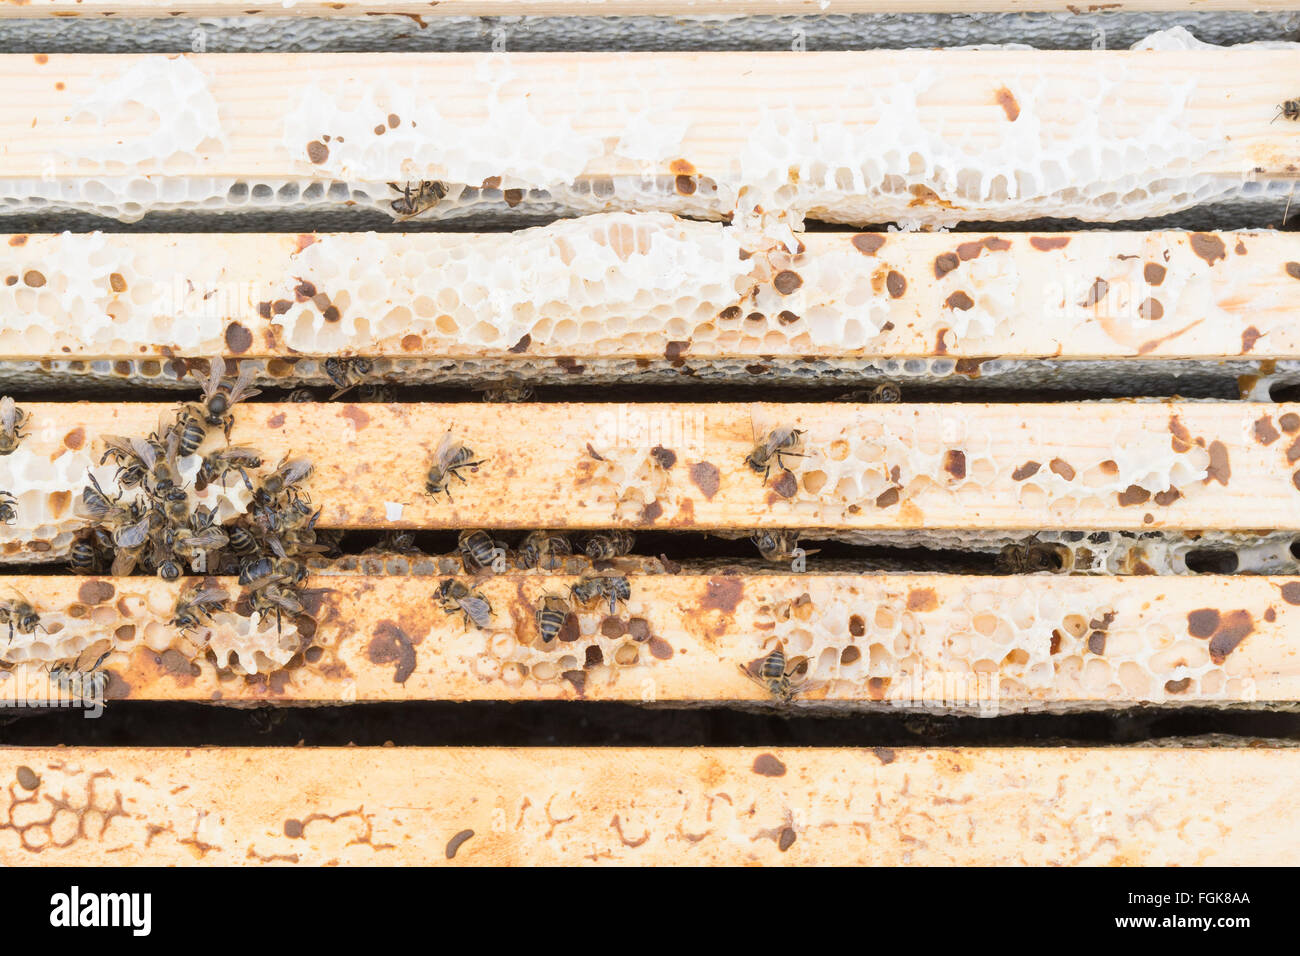 Dead honeybee colony all'interno di alveare dove l'acqua piovana è penetrata l'alveare (i fotogrammi che sono di un colore più scuro sono umida) Foto Stock